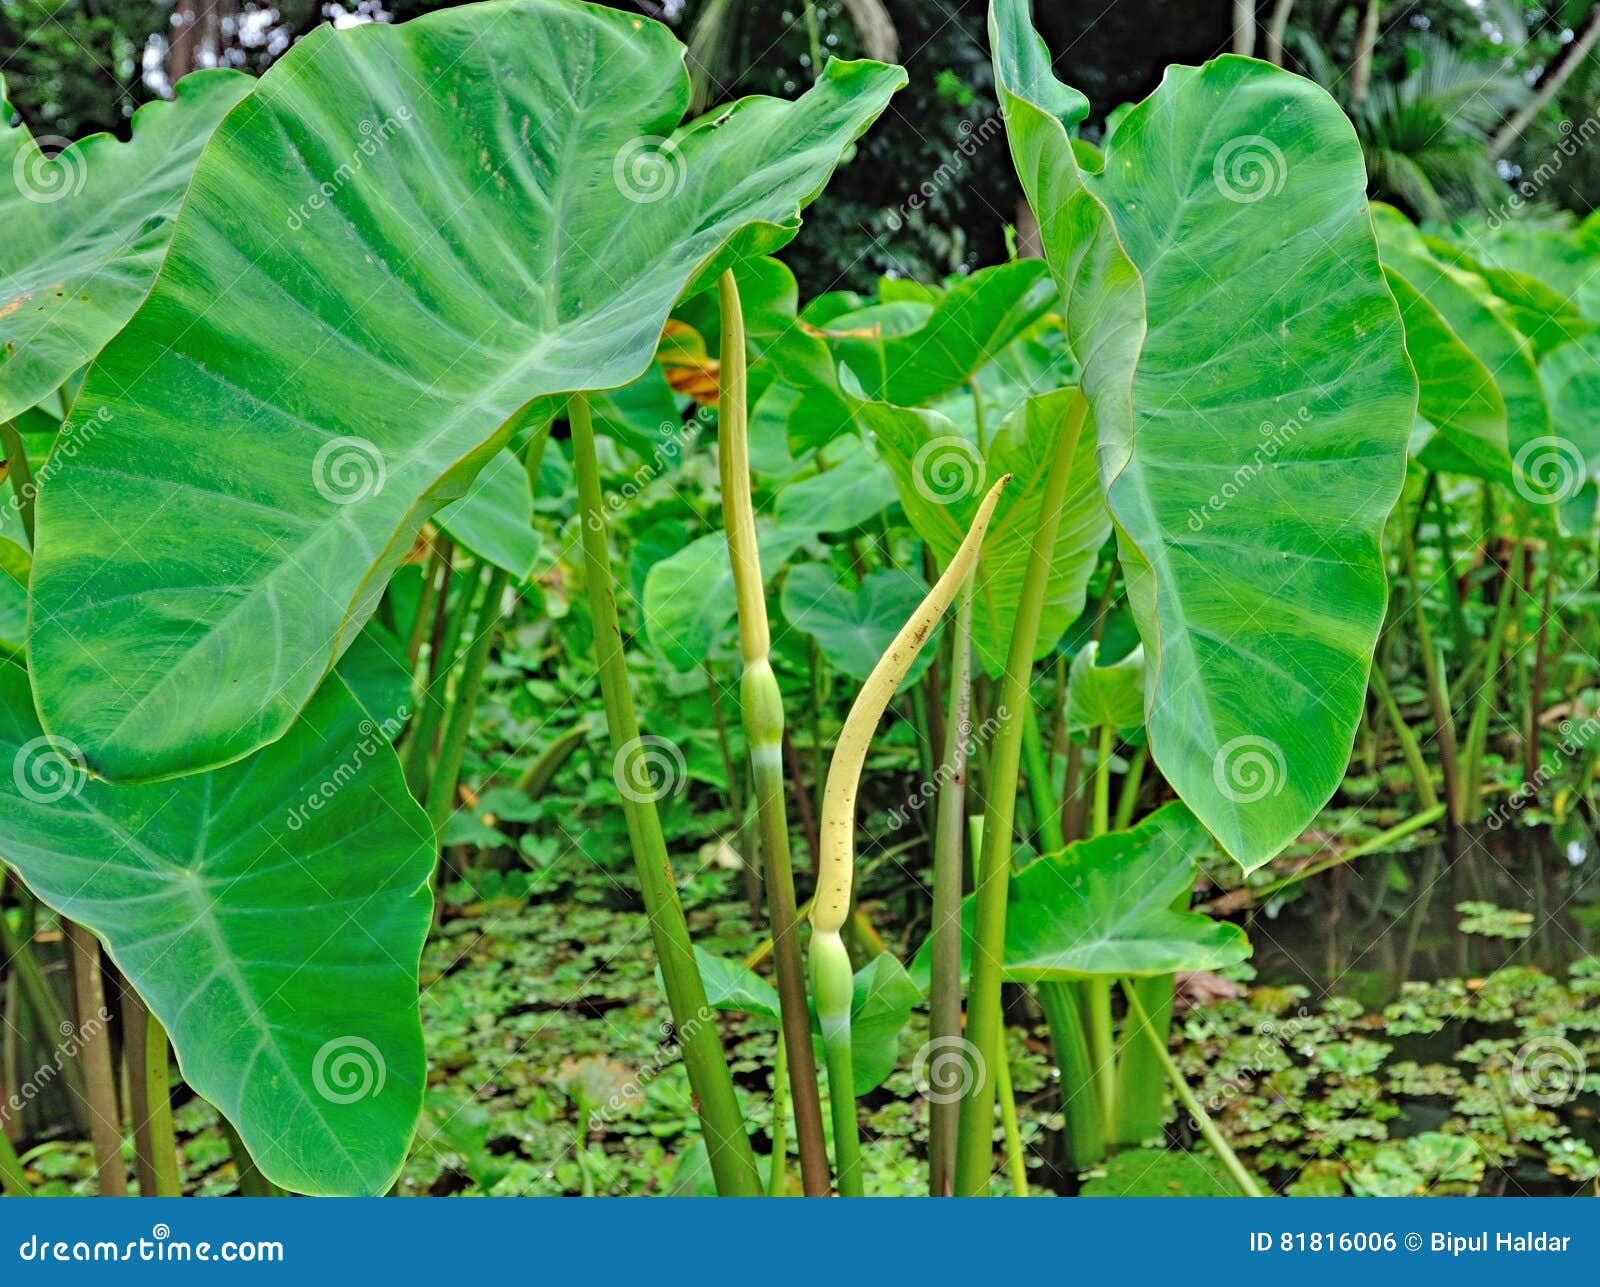 taro plant und blume stockfoto. bild von landschaft, regen - 81816006